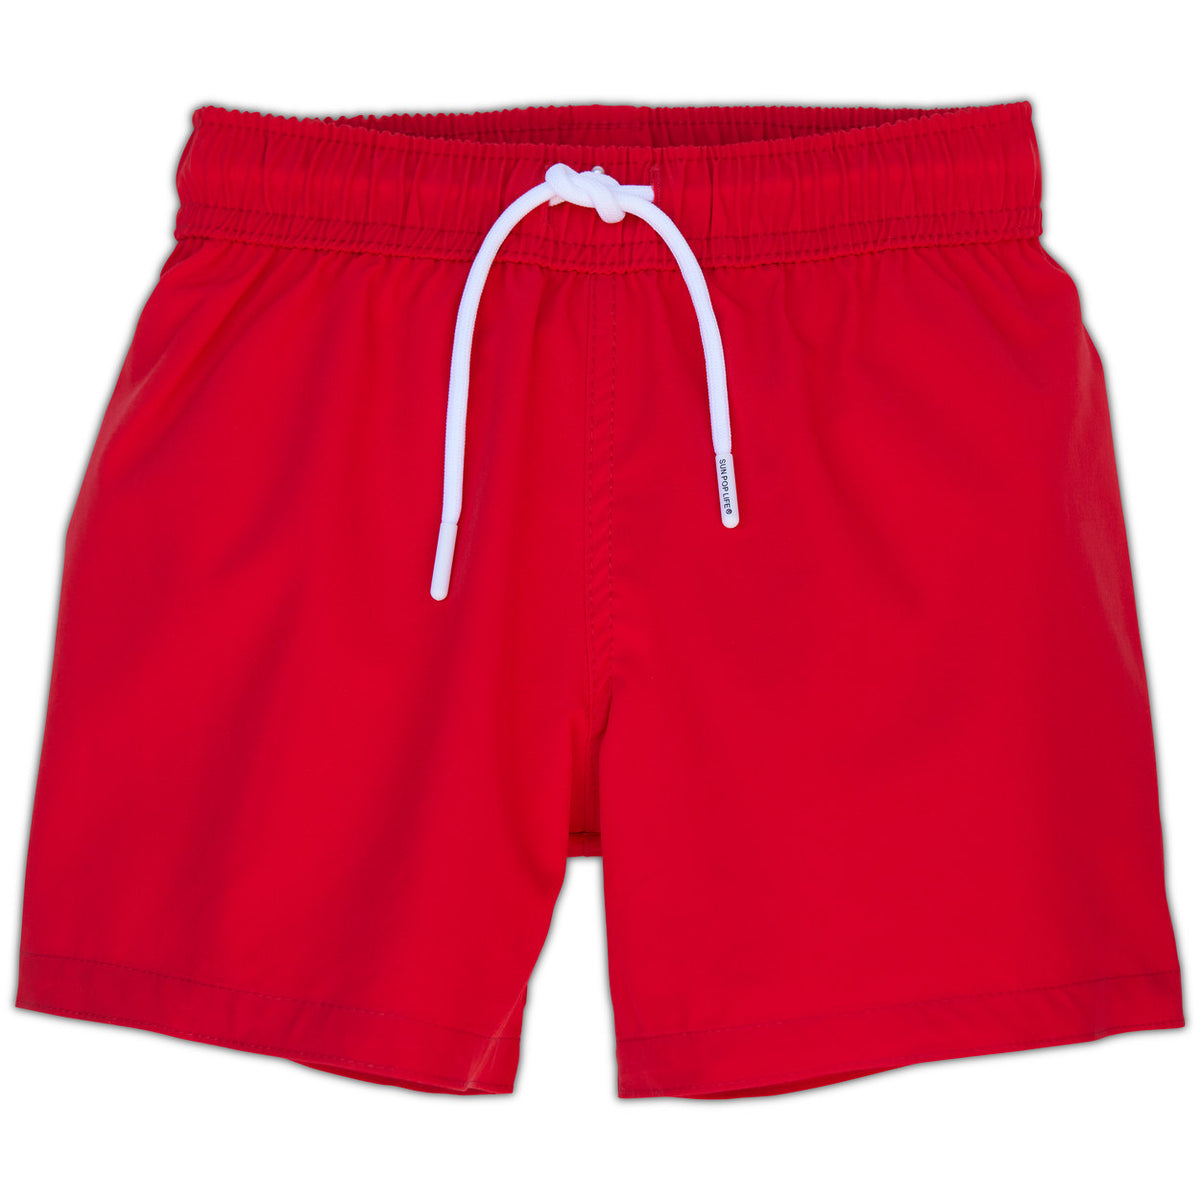 Red Swim Shorts for Boys UPF 50